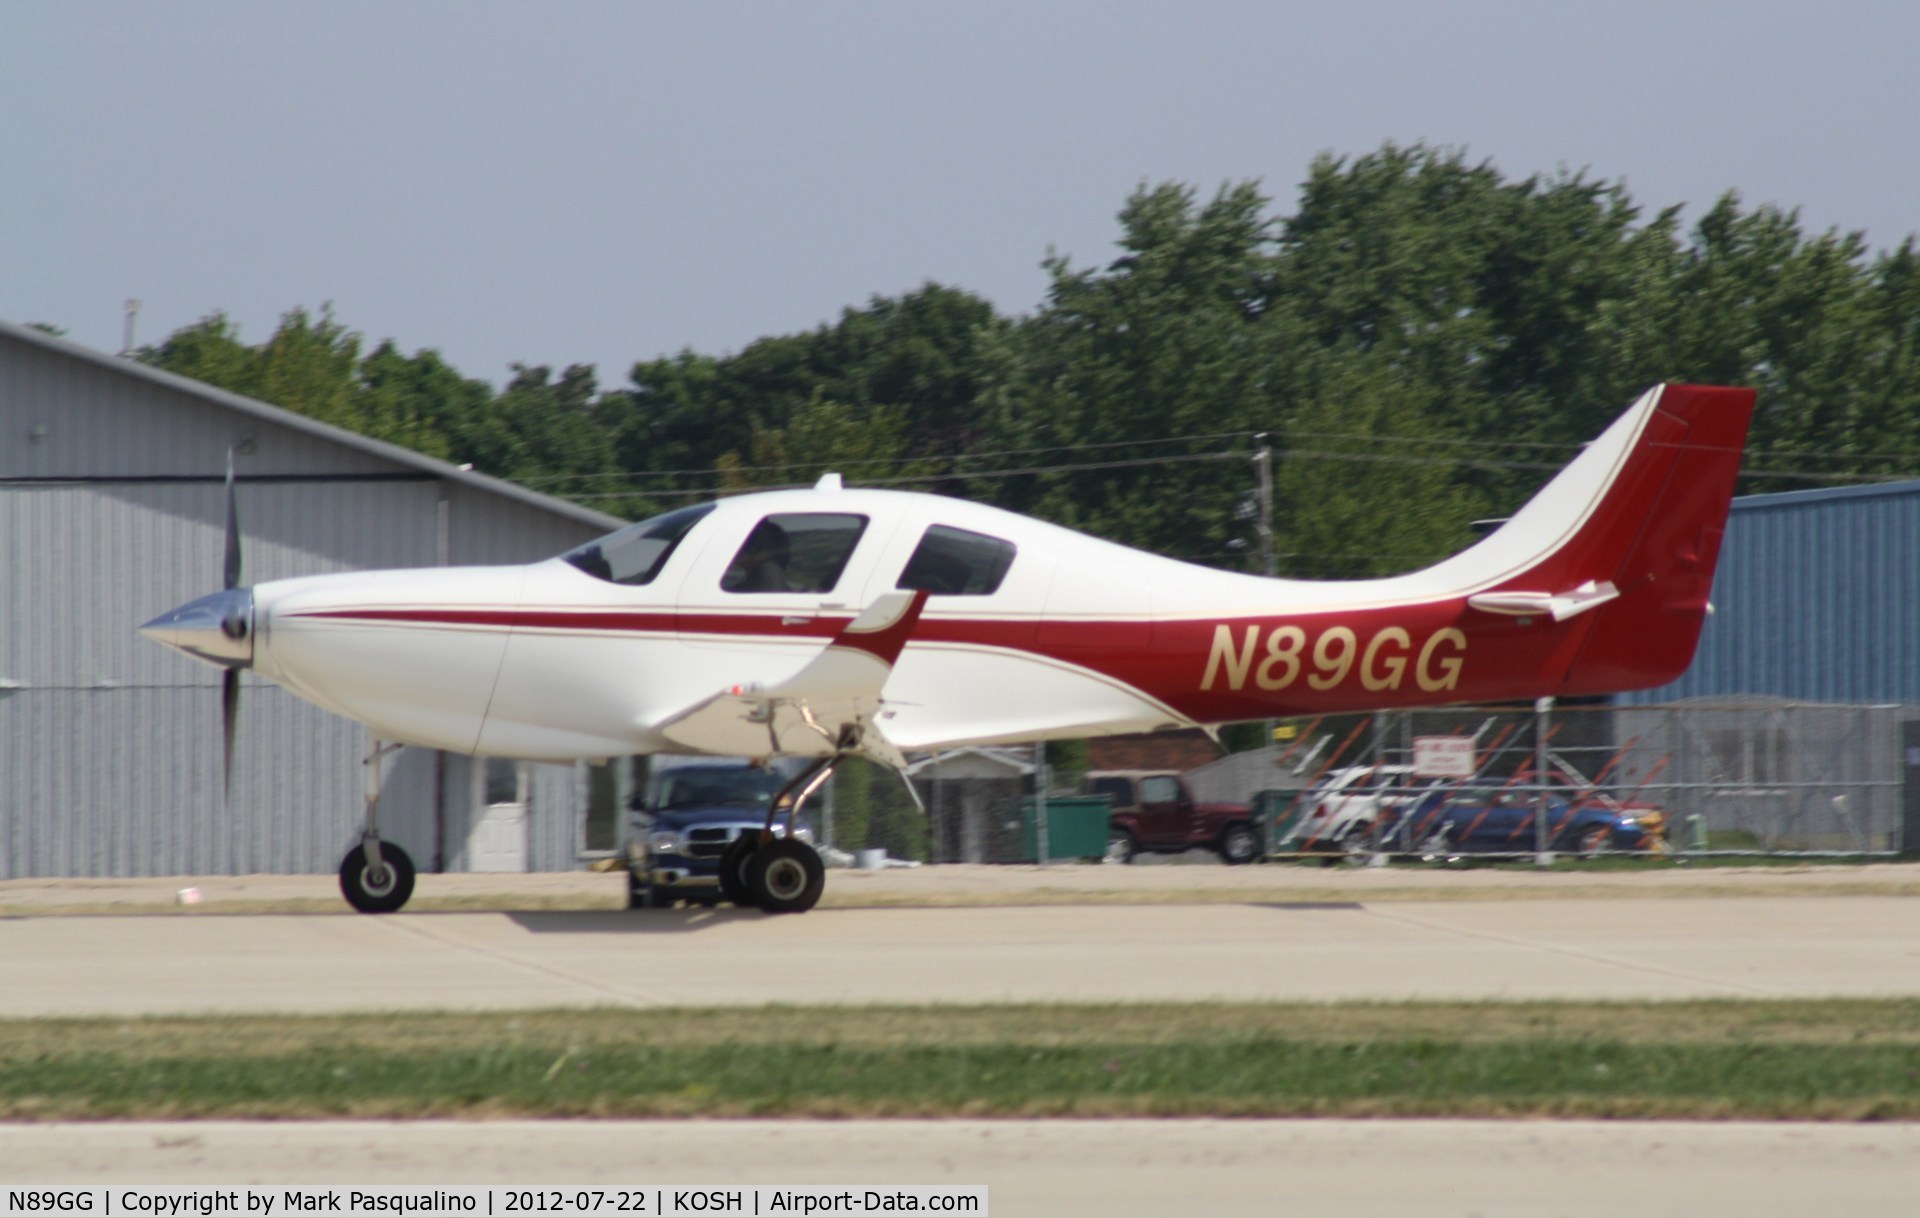 N89GG, 2004 Lancair IV-P C/N LIV-553-SFB-P-DO, Lancair IV-P